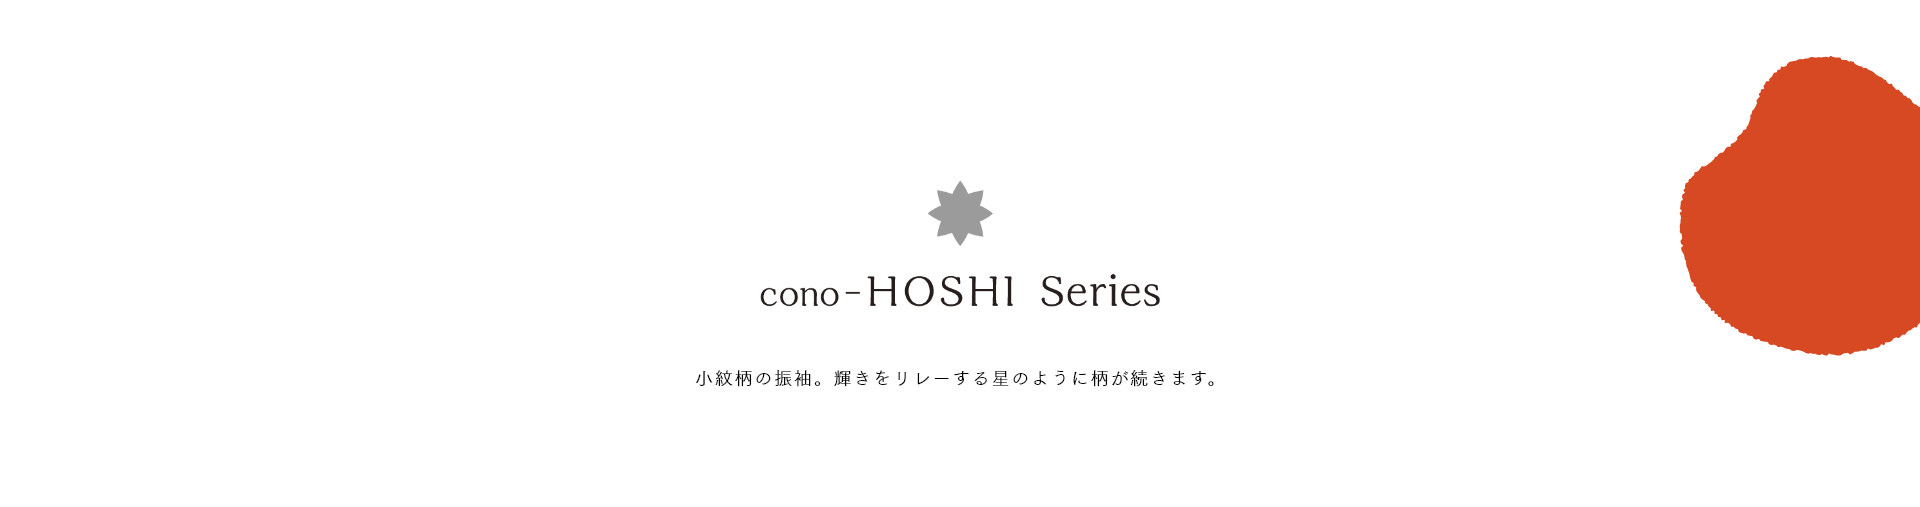 cono-HOSHI